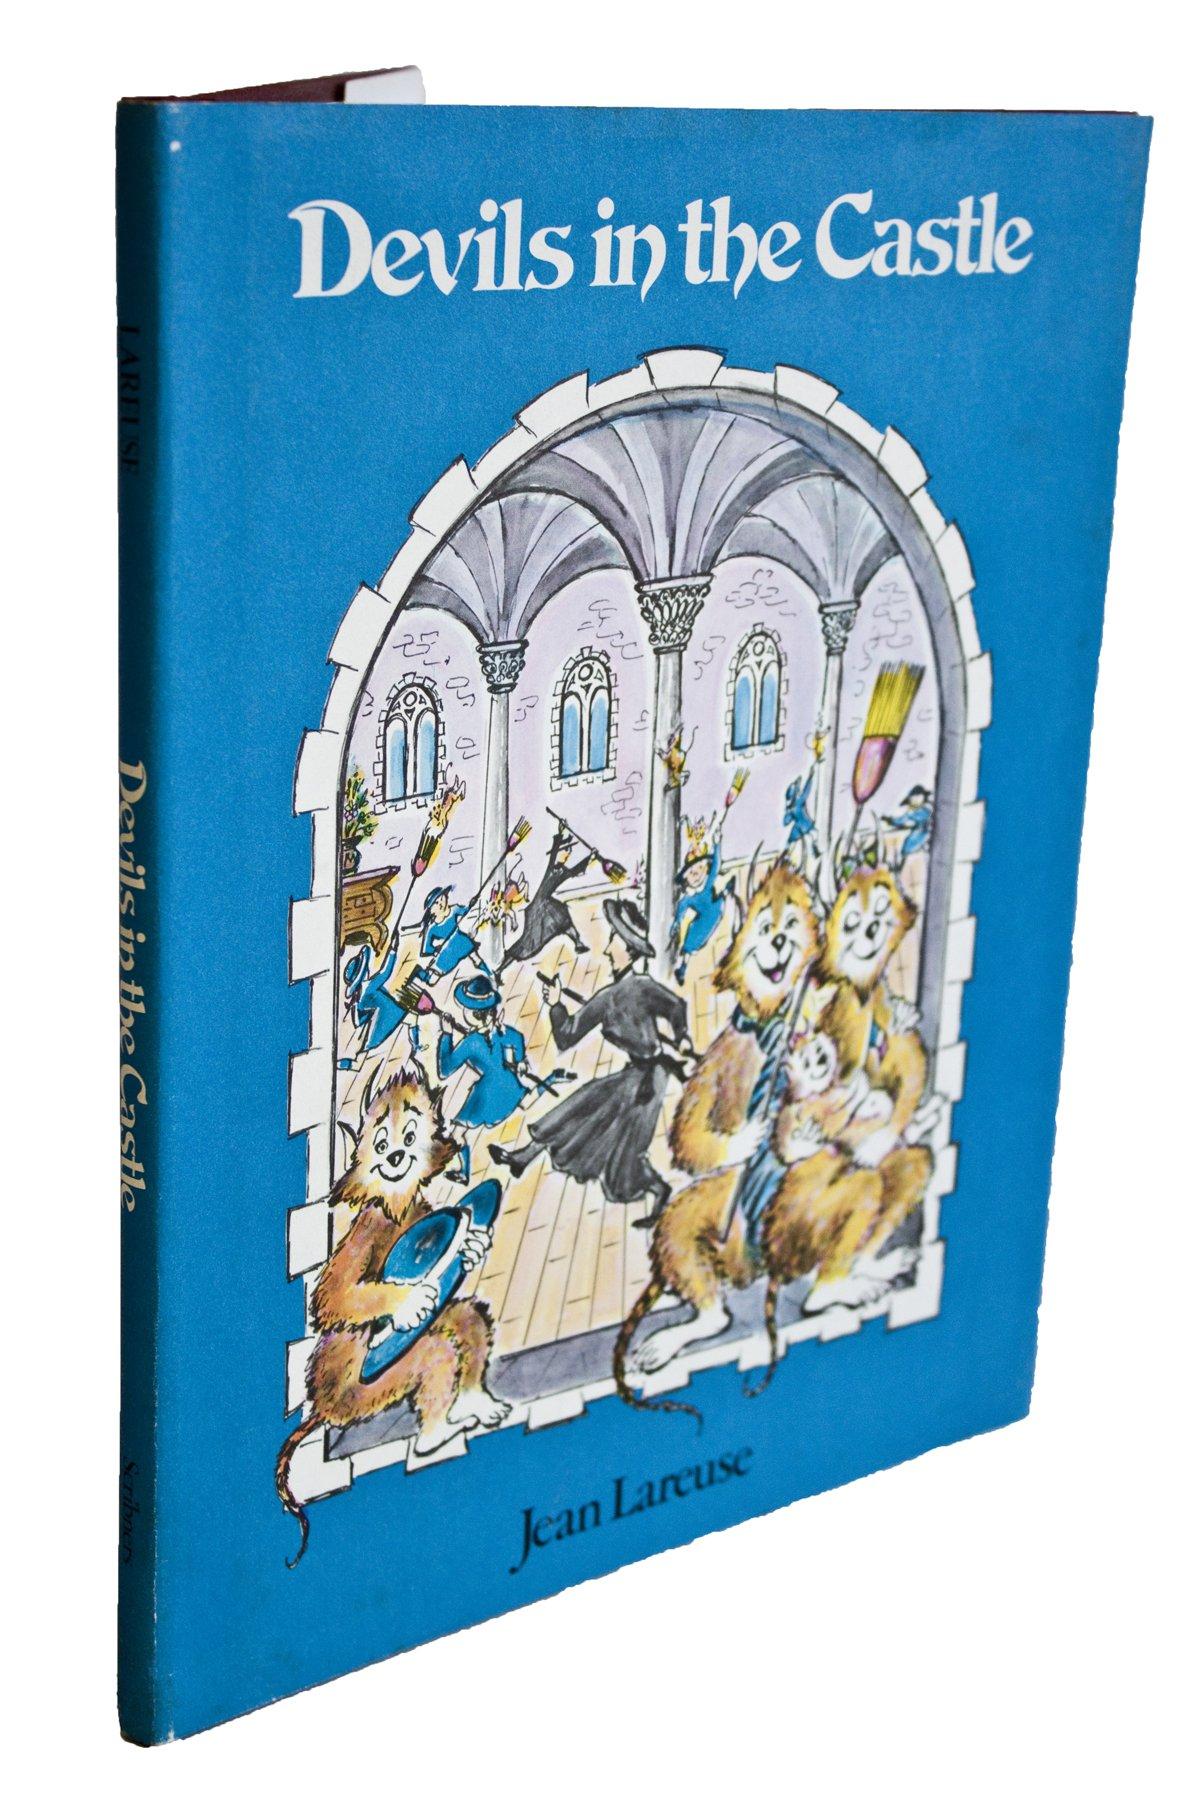 Livre bleu Jean Lareuse : Devils in the Castle (Les diadèmes du château) de 1979 - Print de Unknown